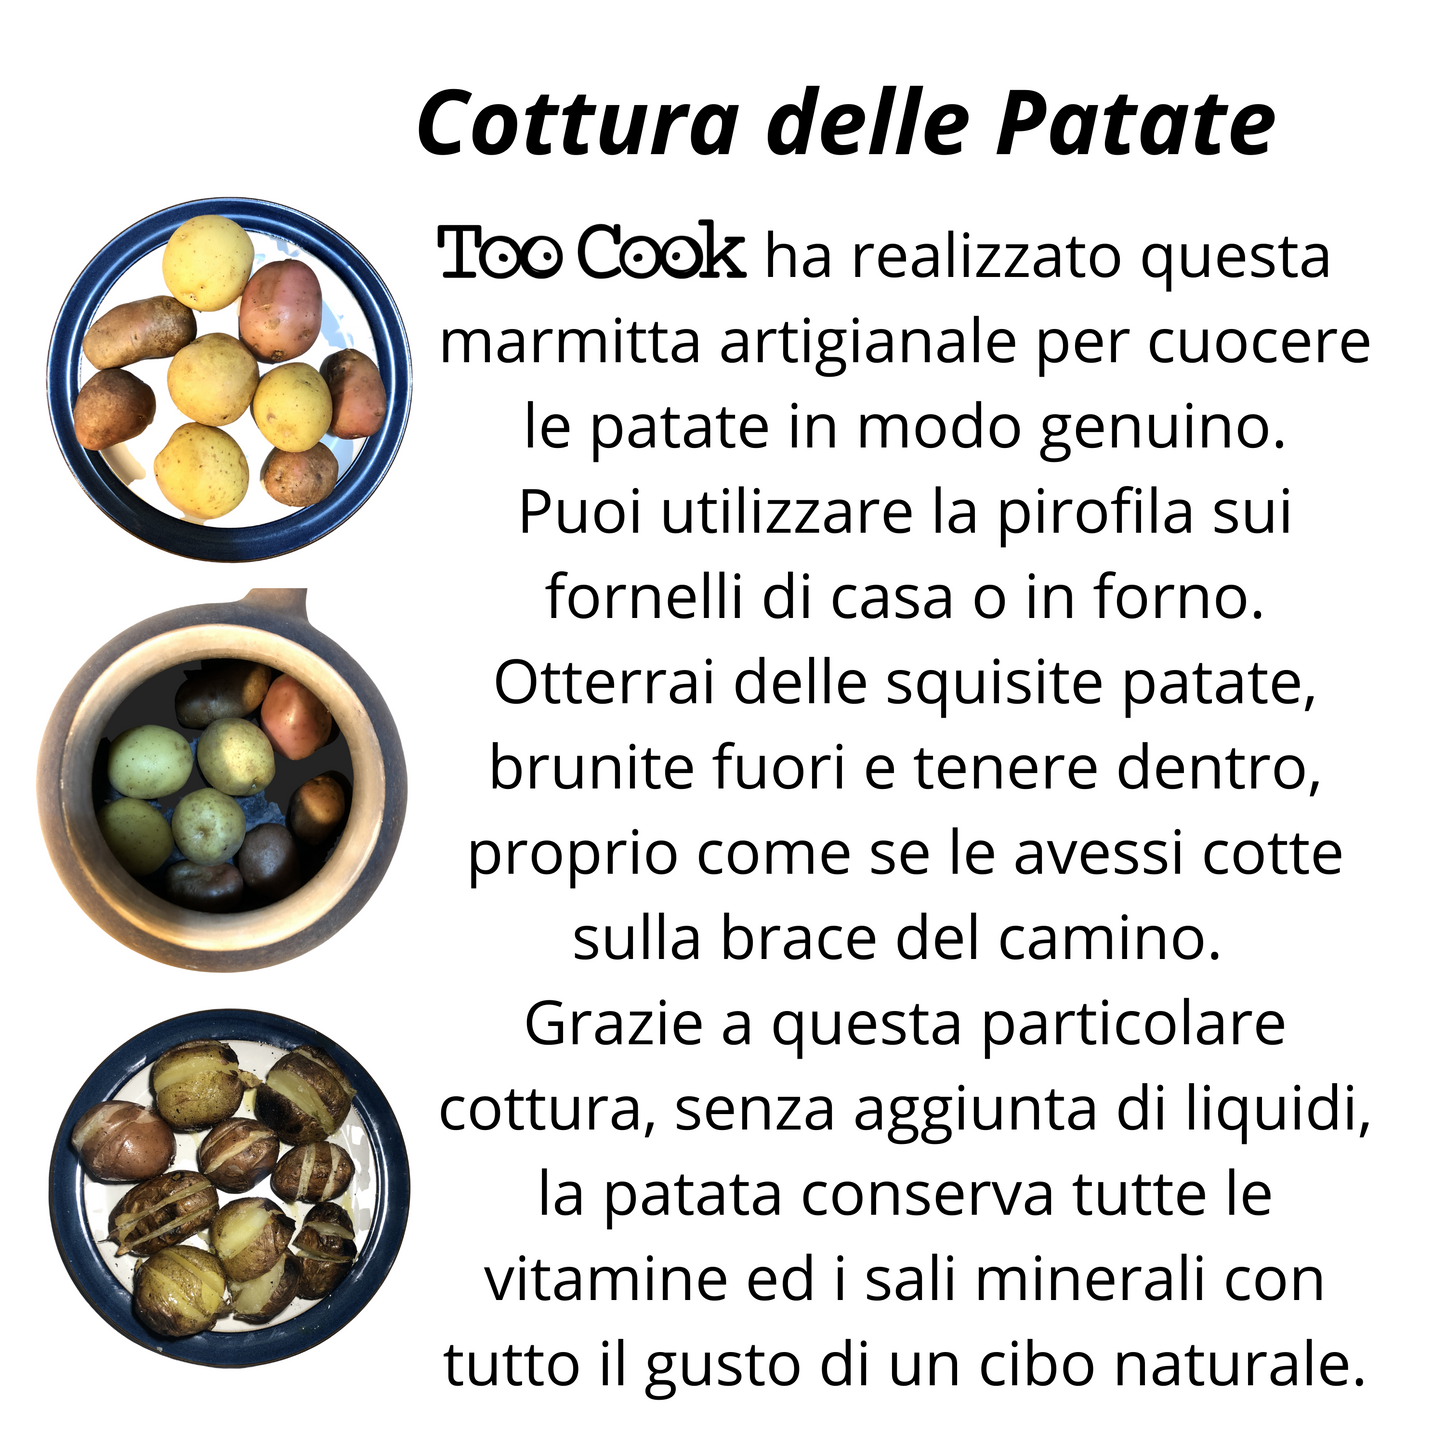 Toocook Cuoci Patate e Castagne in Terracotta Smaltata per Cucina Semplice Naturale No Grassi e senza alterare le proprietà del cibo Made in Italy 100%